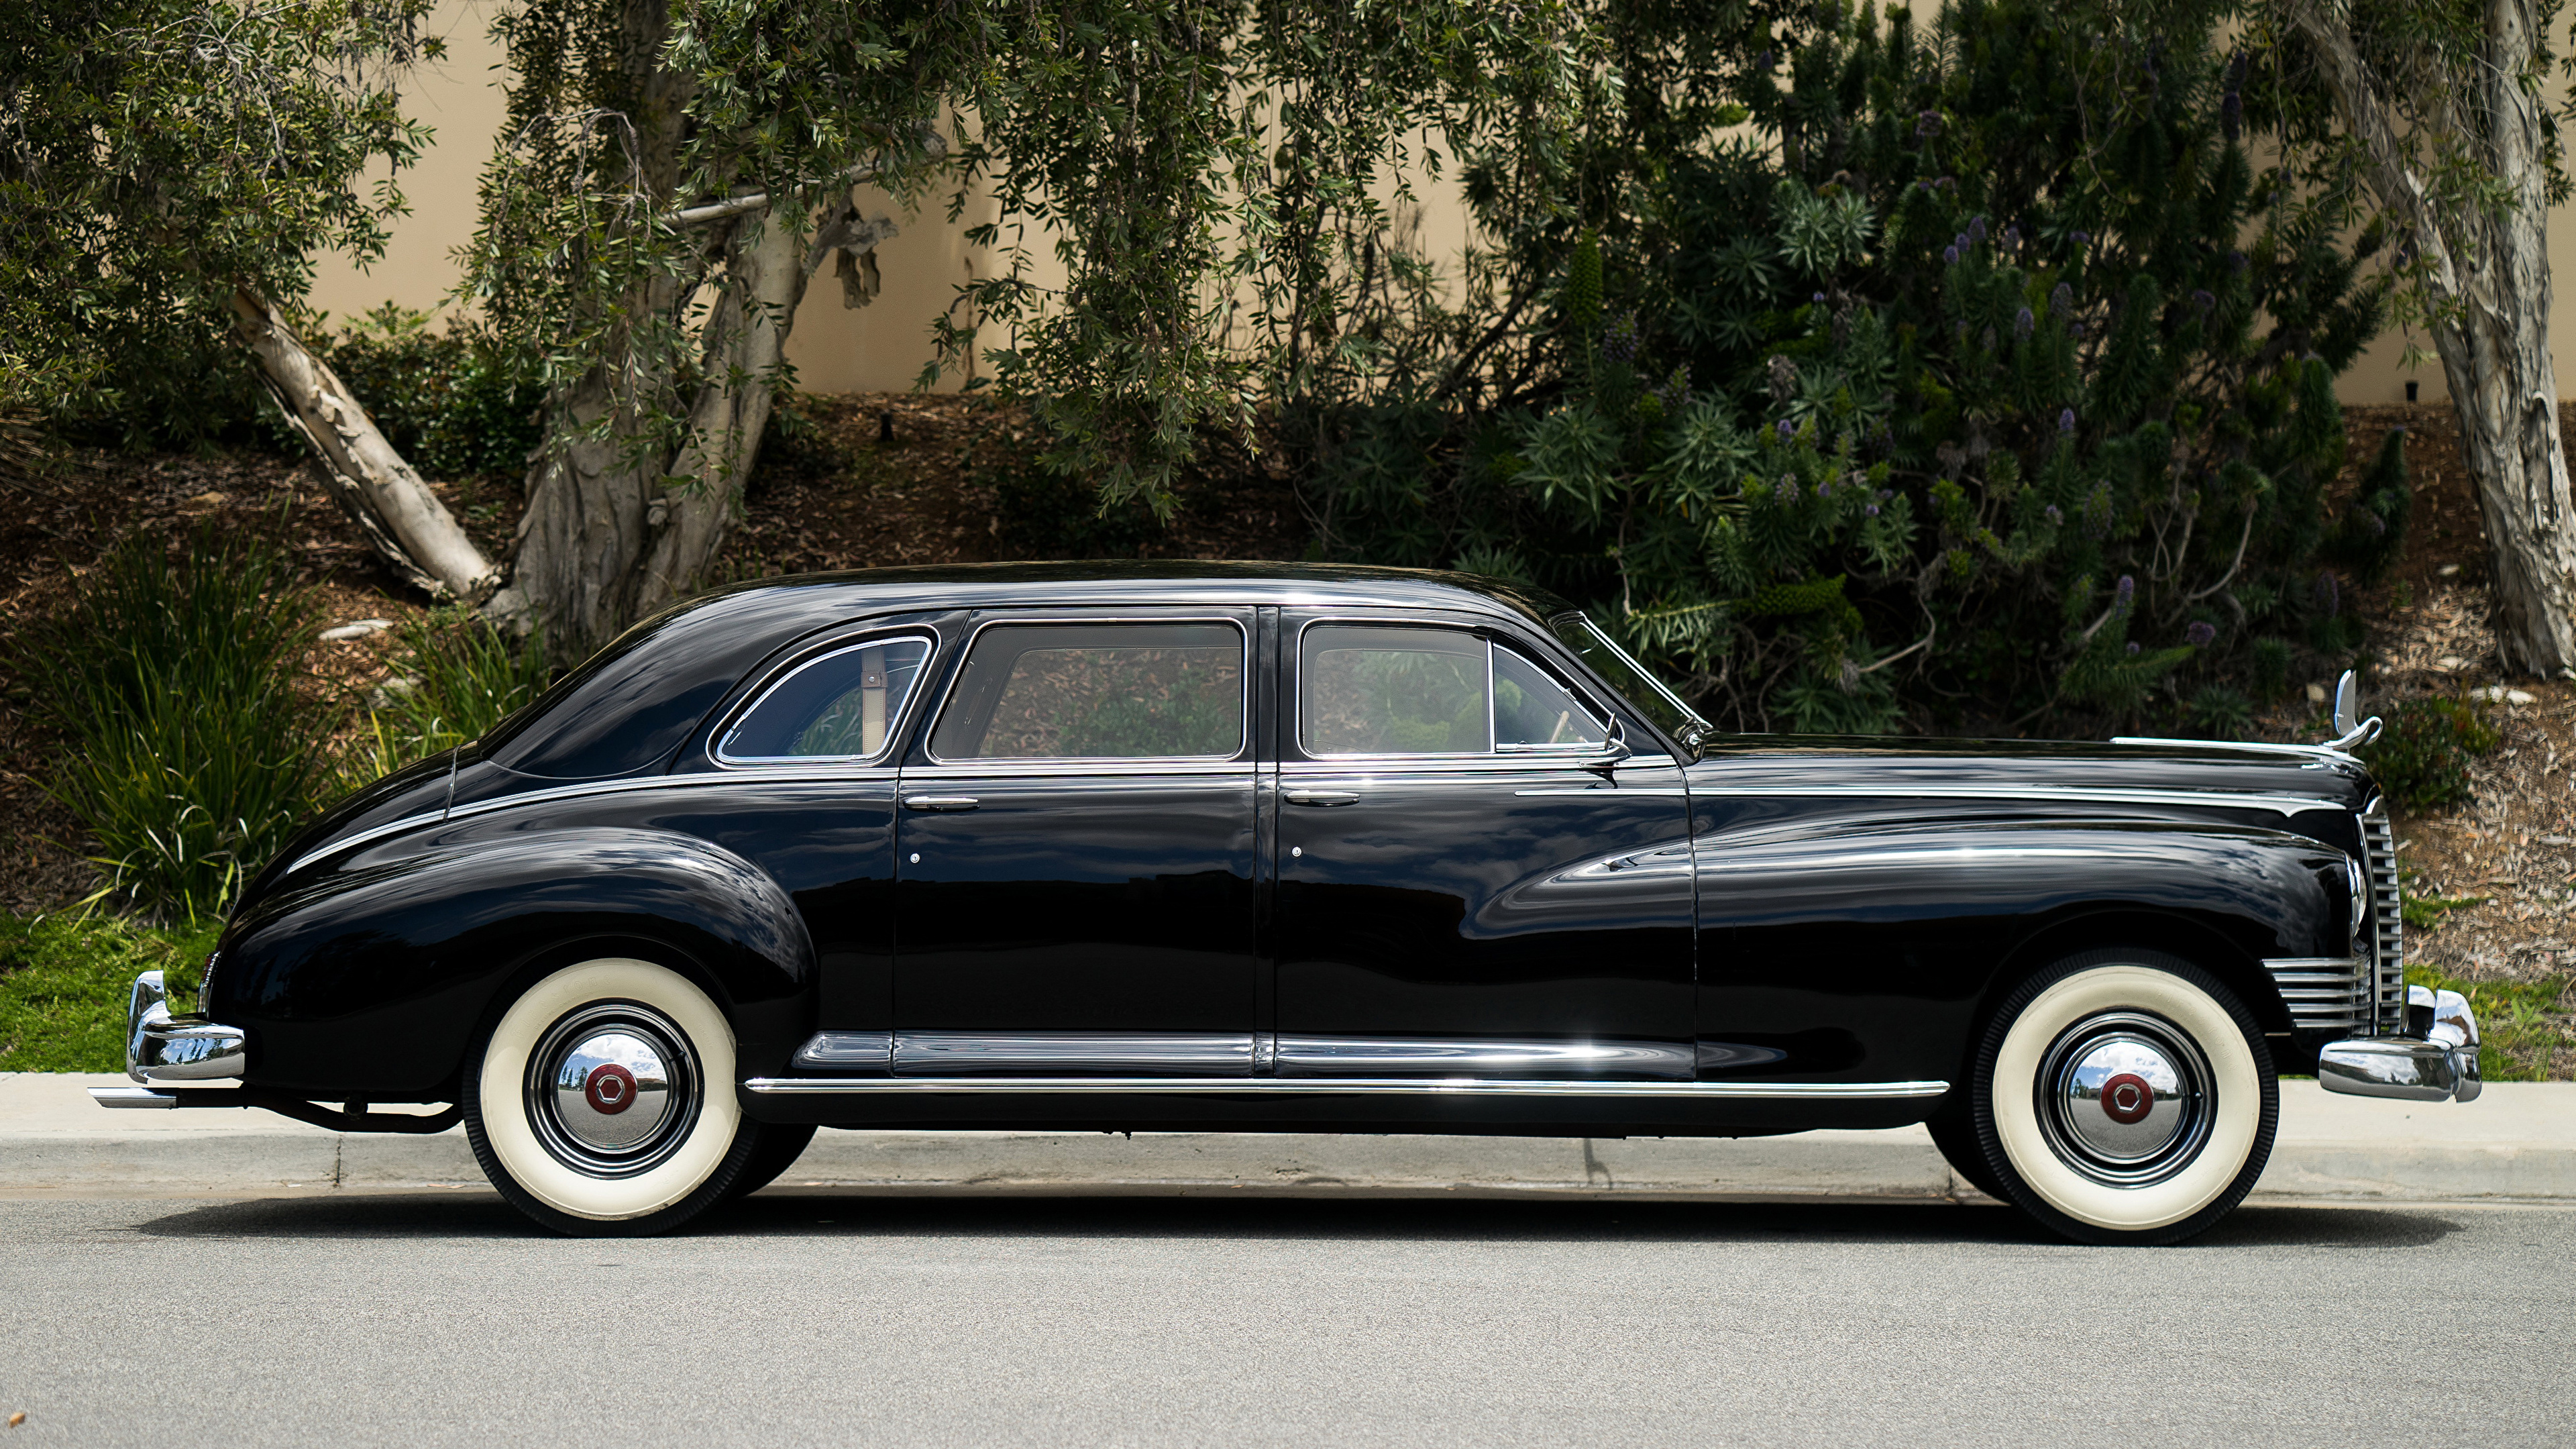 Фото 1946 Packard Custom Super Clipper Limousine Ретро Черный Сбоку машина Металлик 3840x2160 винтаж черная черные черных старинные авто машины Автомобили автомобиль